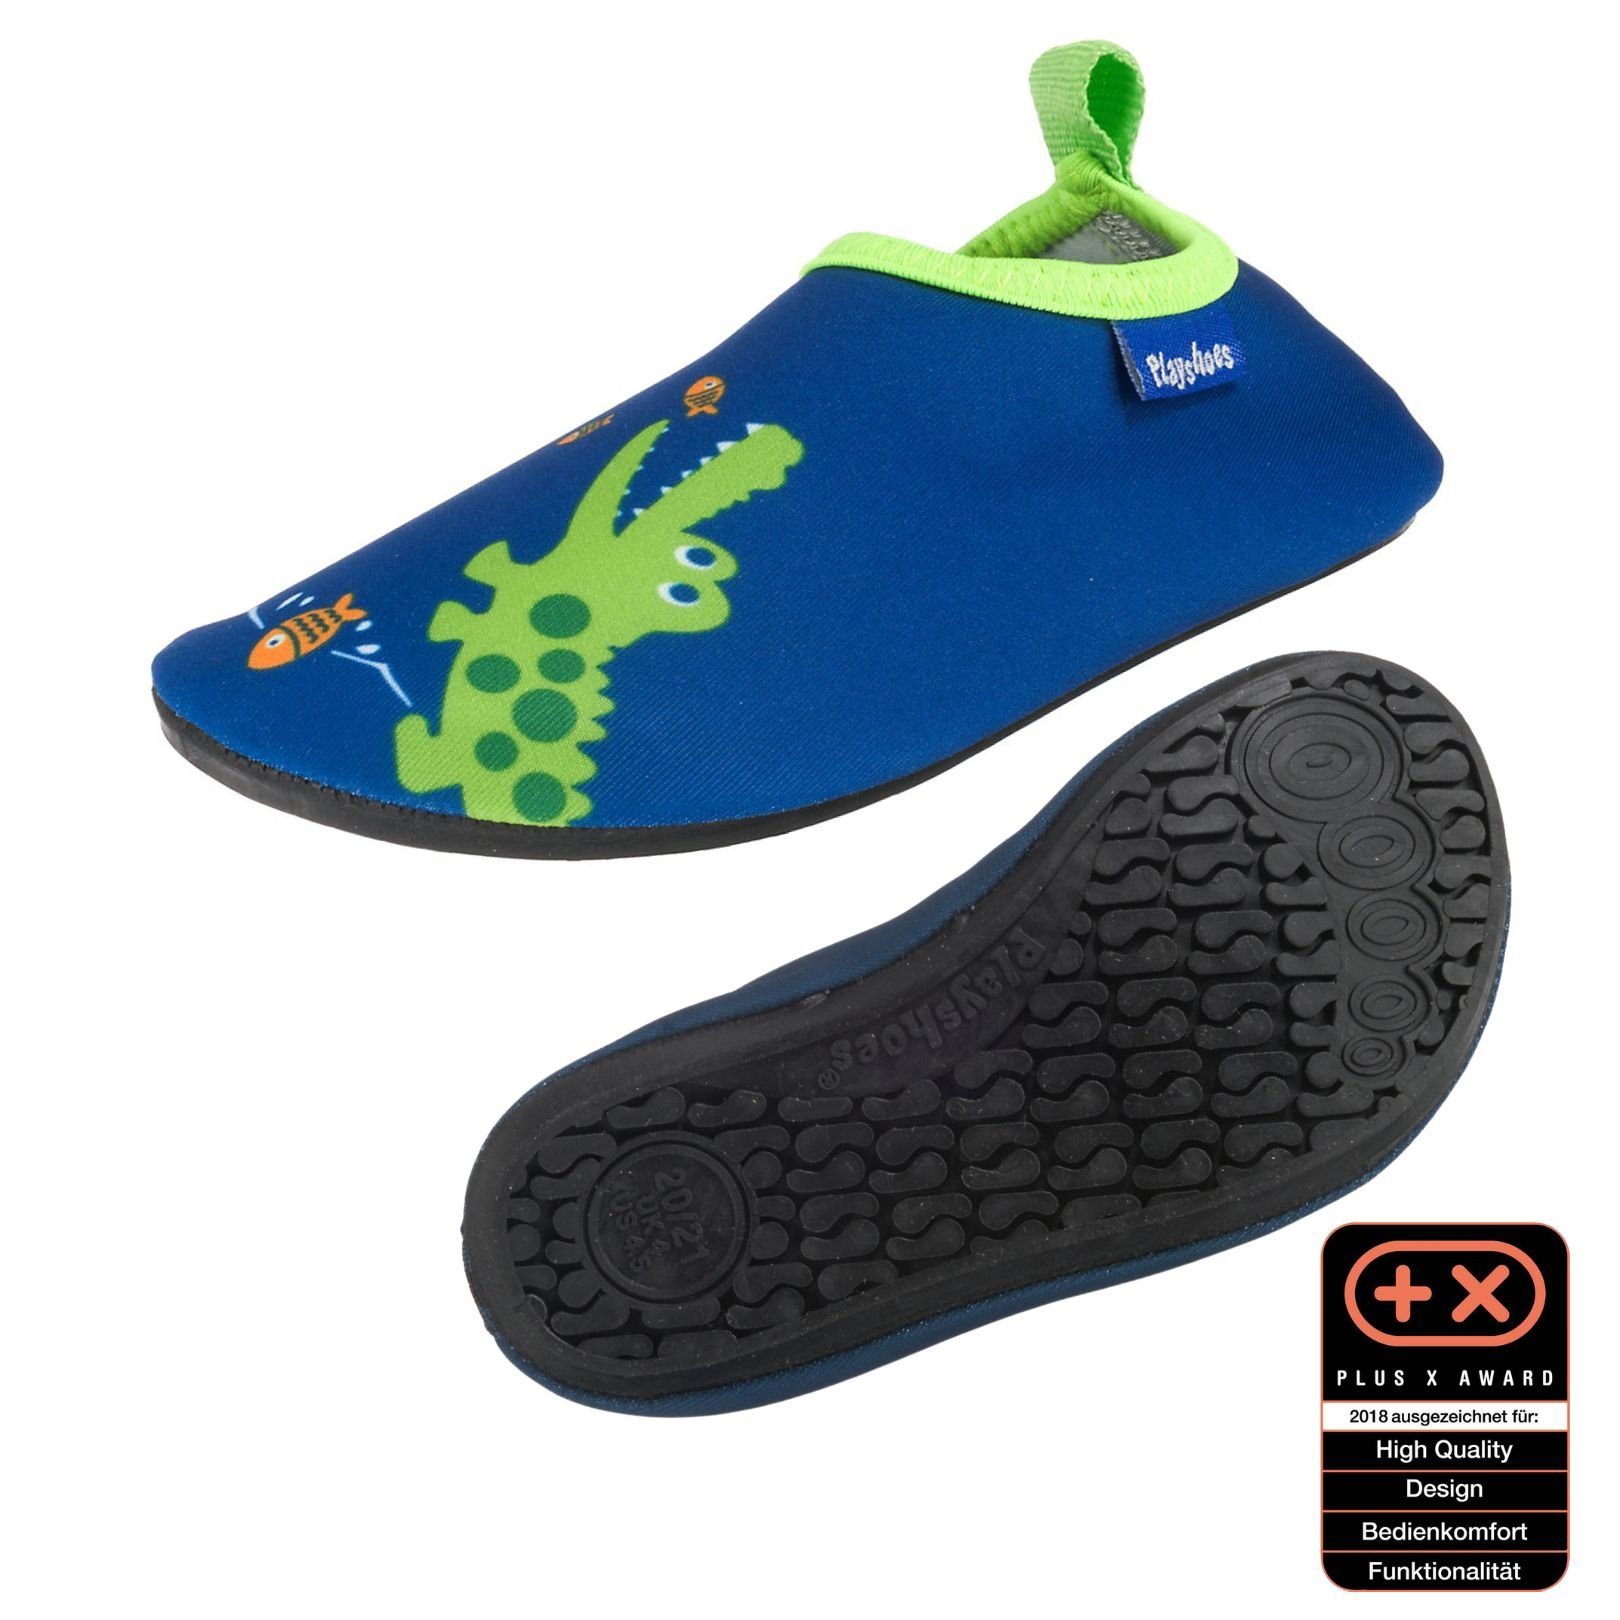 Playshoes Badeschuhe Wasserschuhe Schwimmschuhe, Motiv Badeschuh flexible Passform, Barfuß-Schuh mit rutschhemmender Sohle Krodkodil-blau